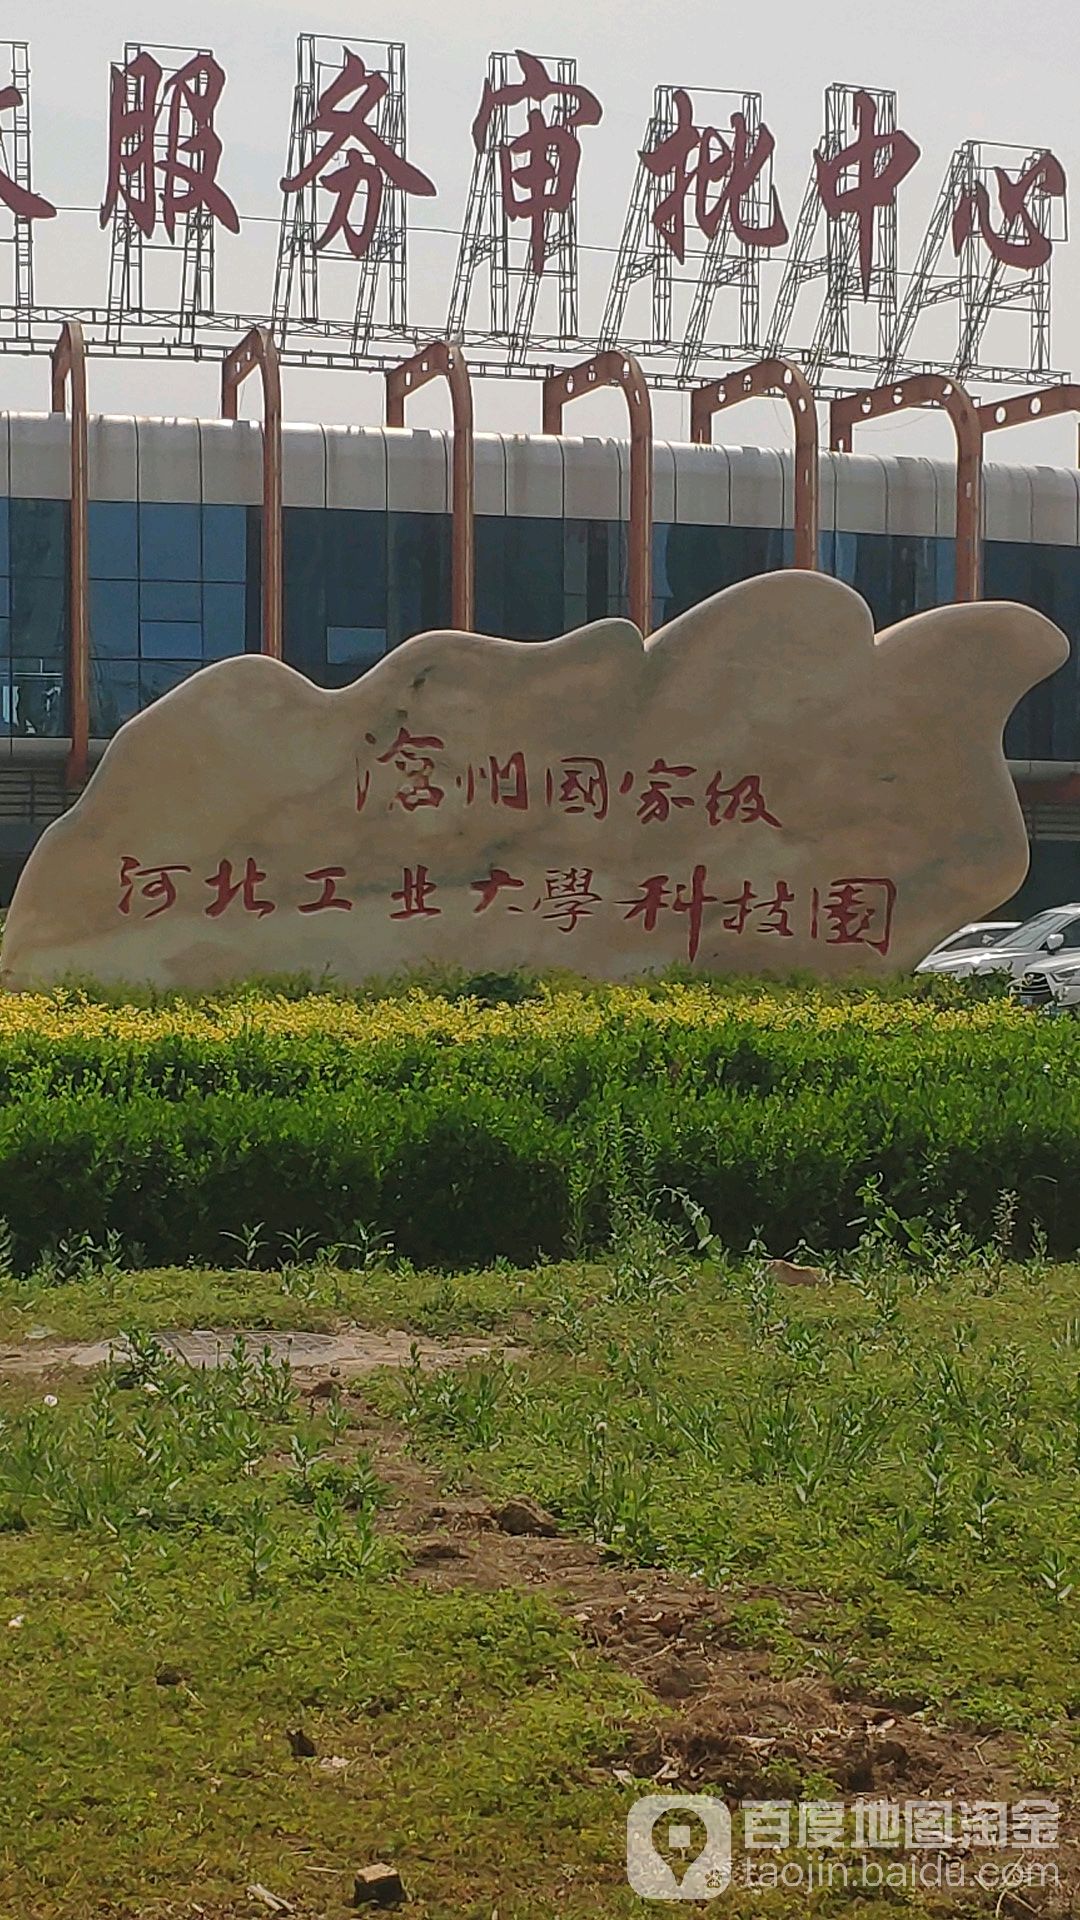 河北工业大学科技园(沧州园区)